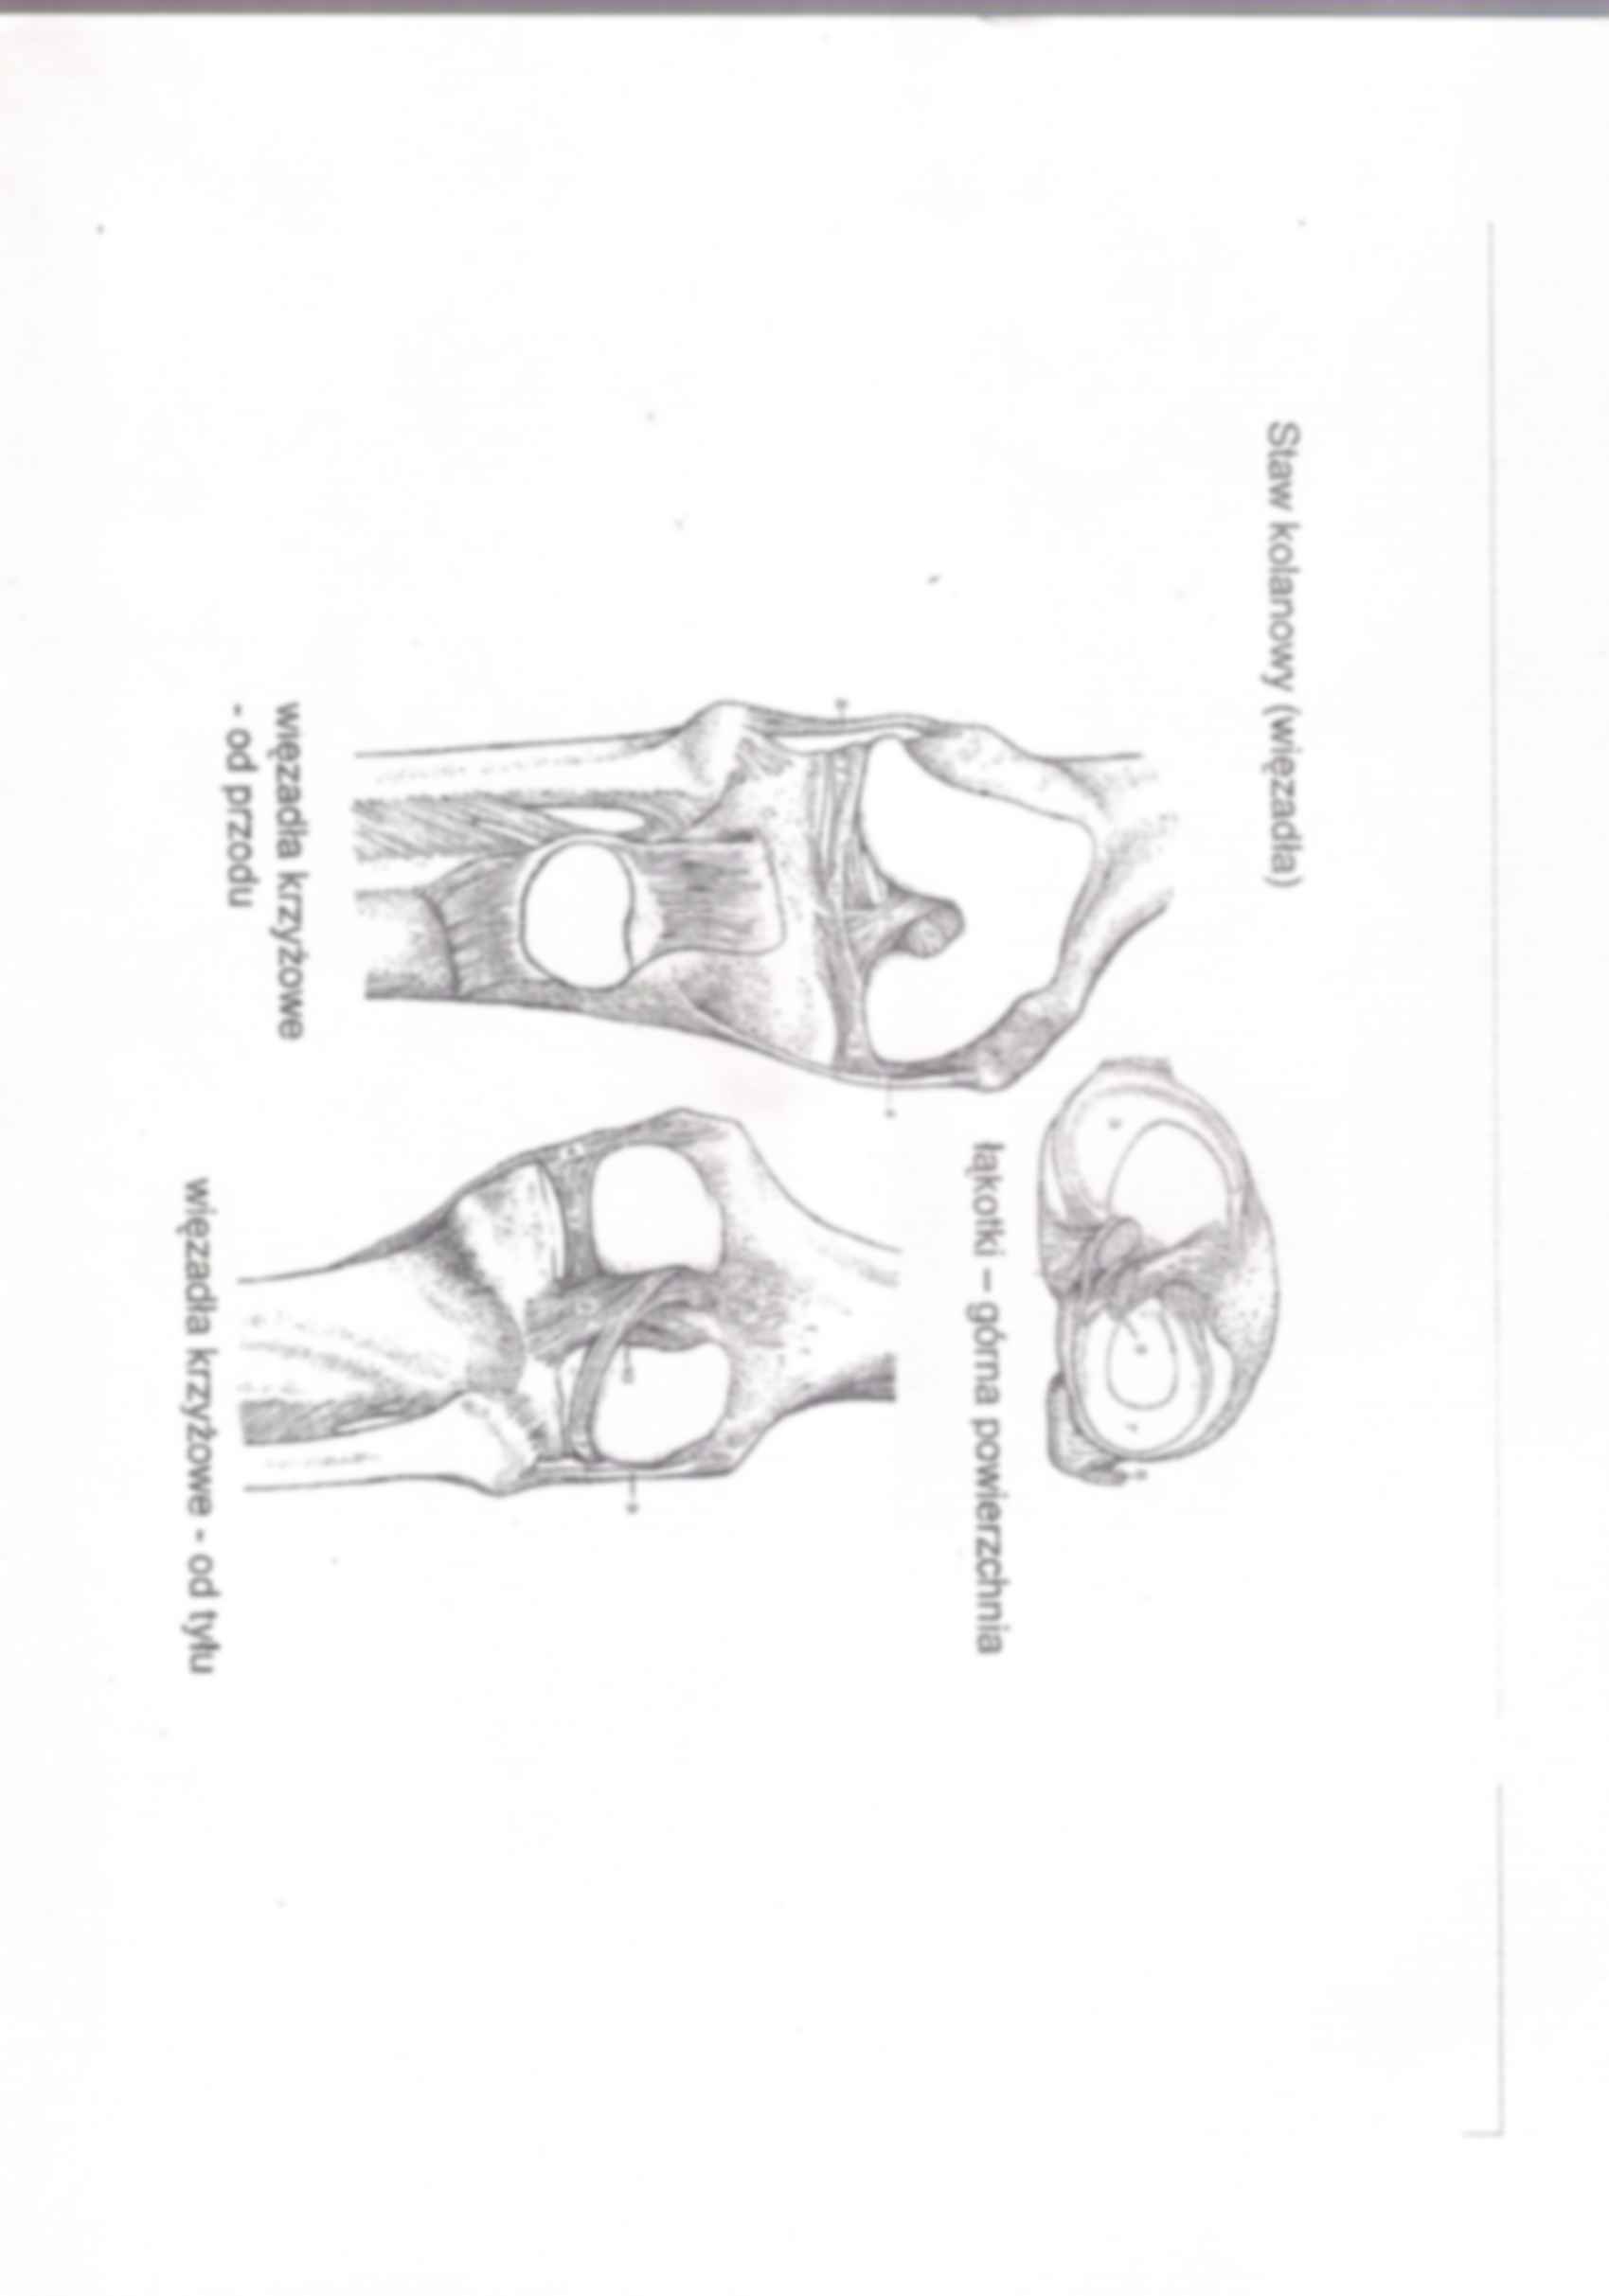 anatomia kończyna dolna stawy i mięśnie 2 - strona 3